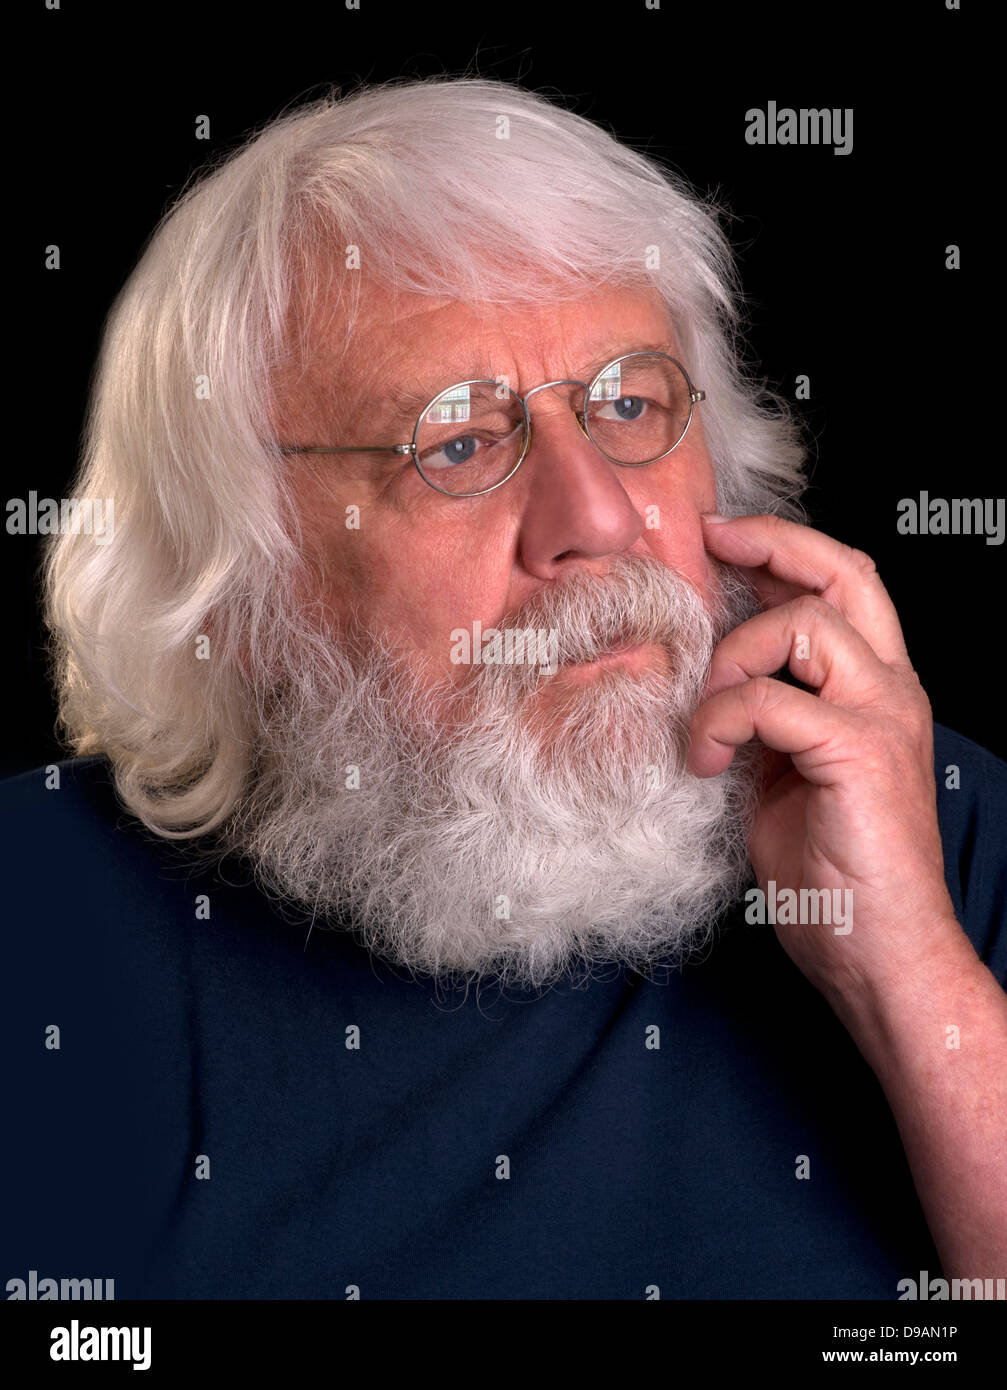 Vieil homme avec barbe complète et verres pensée avec sa main au menton Banque D'Images